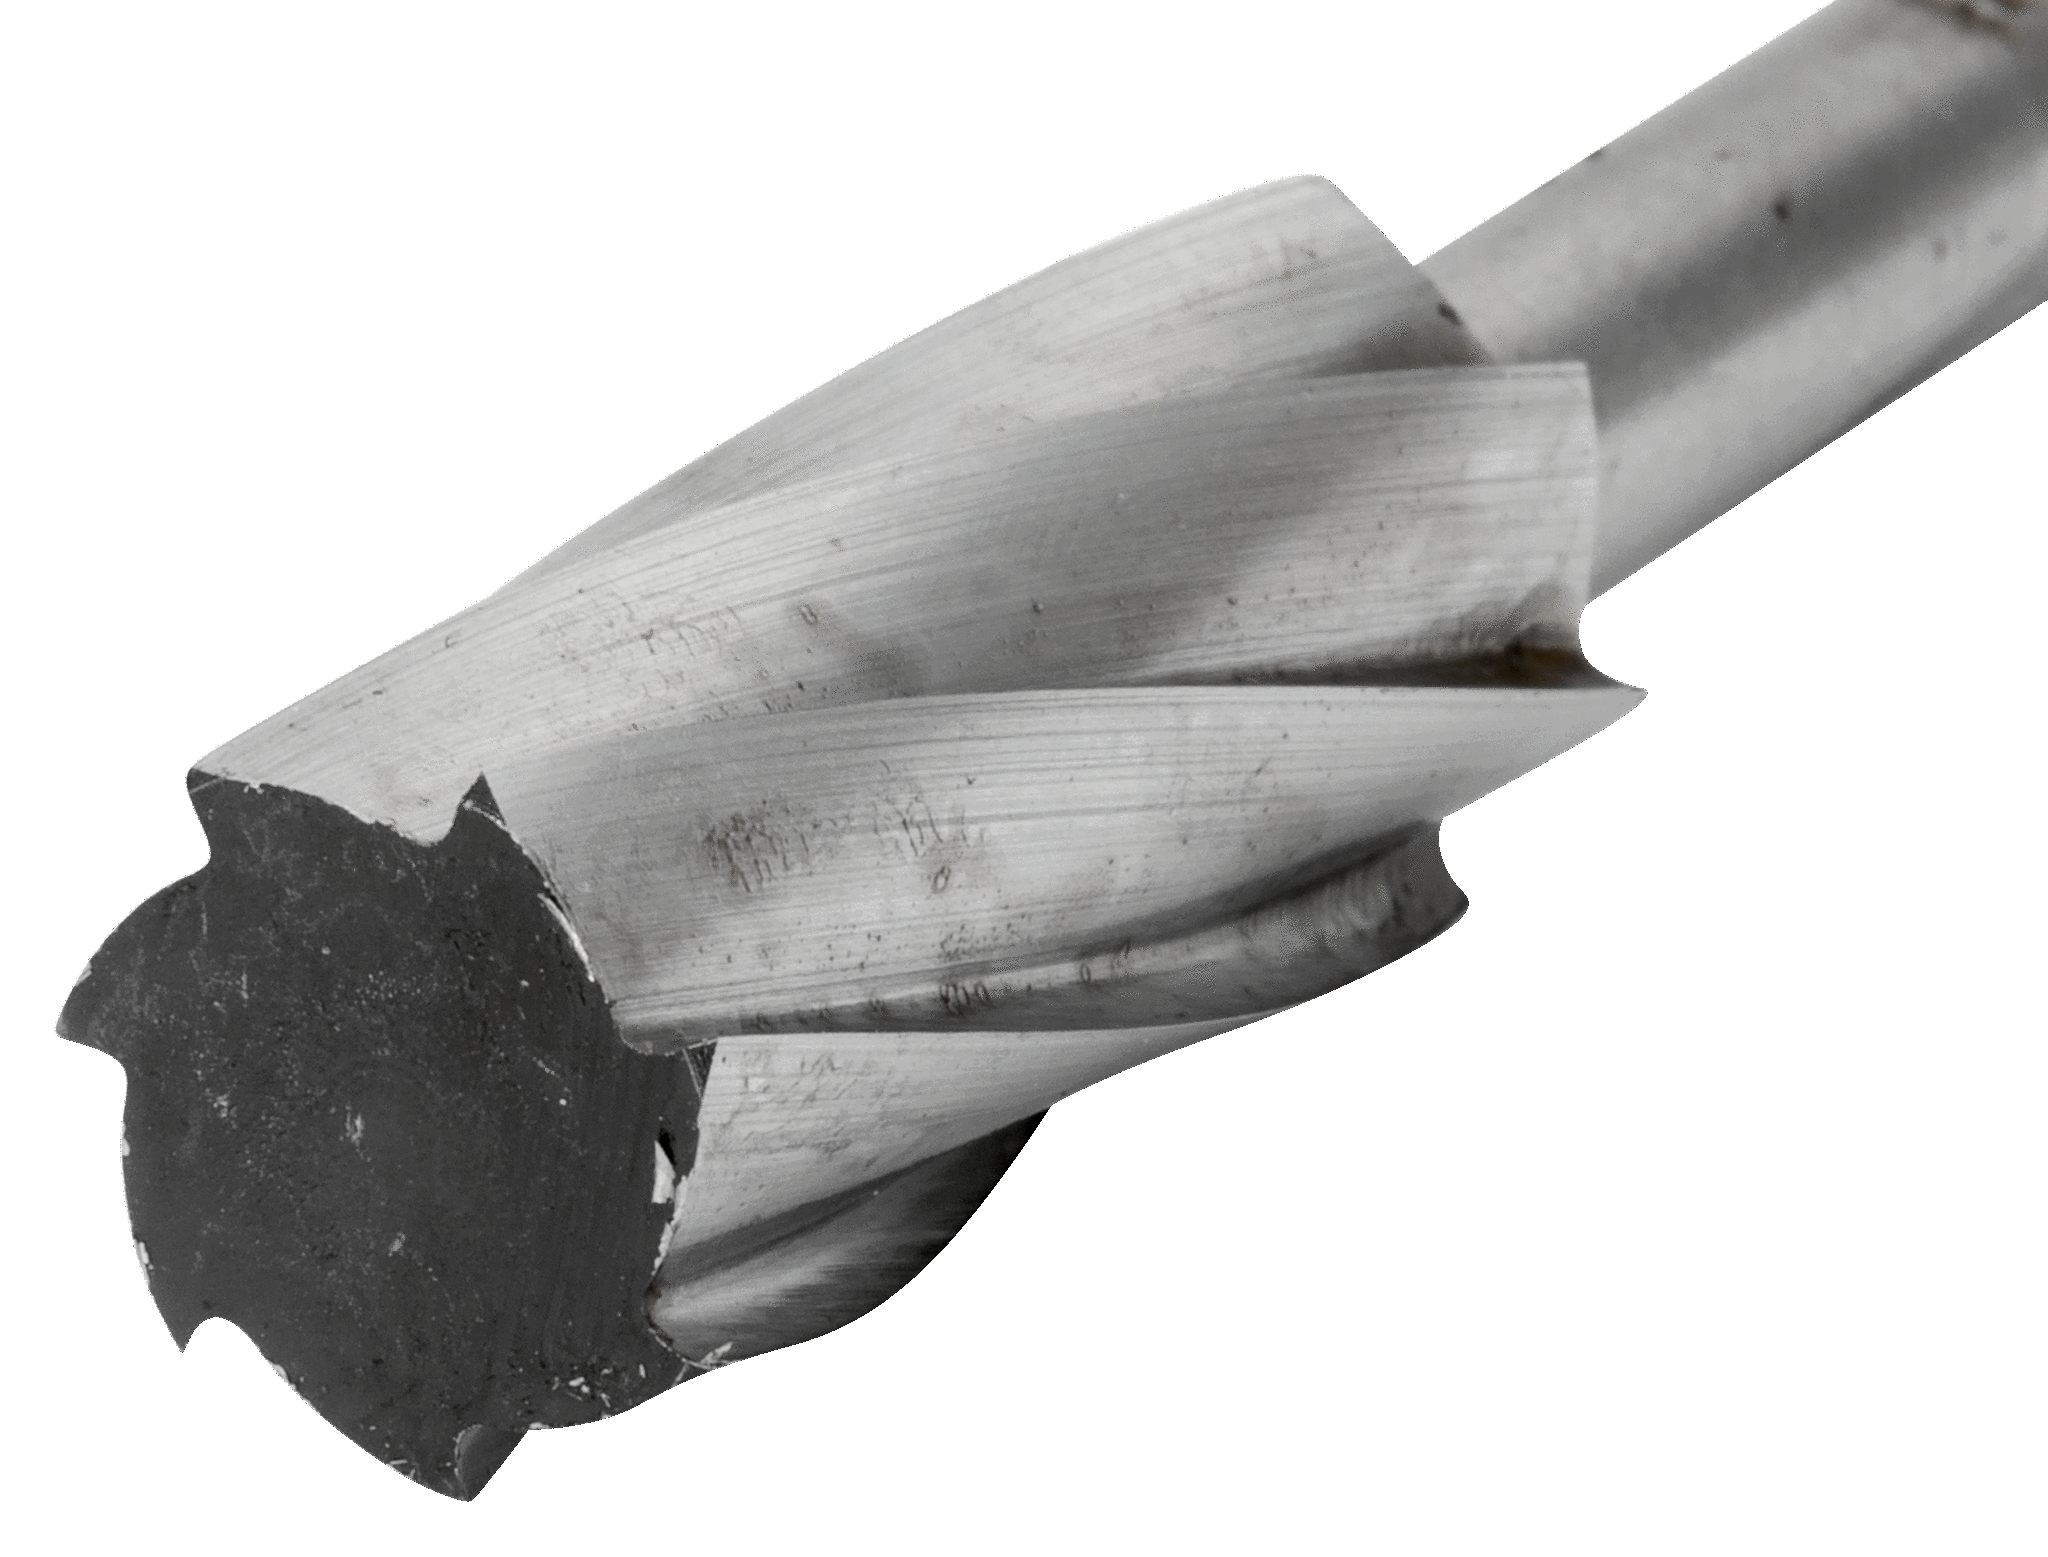 картинка Борфрезы из быстрорежущей стали с цилиндрической головкой BAHCO HSSG-A1020M от магазина "Элит-инструмент"